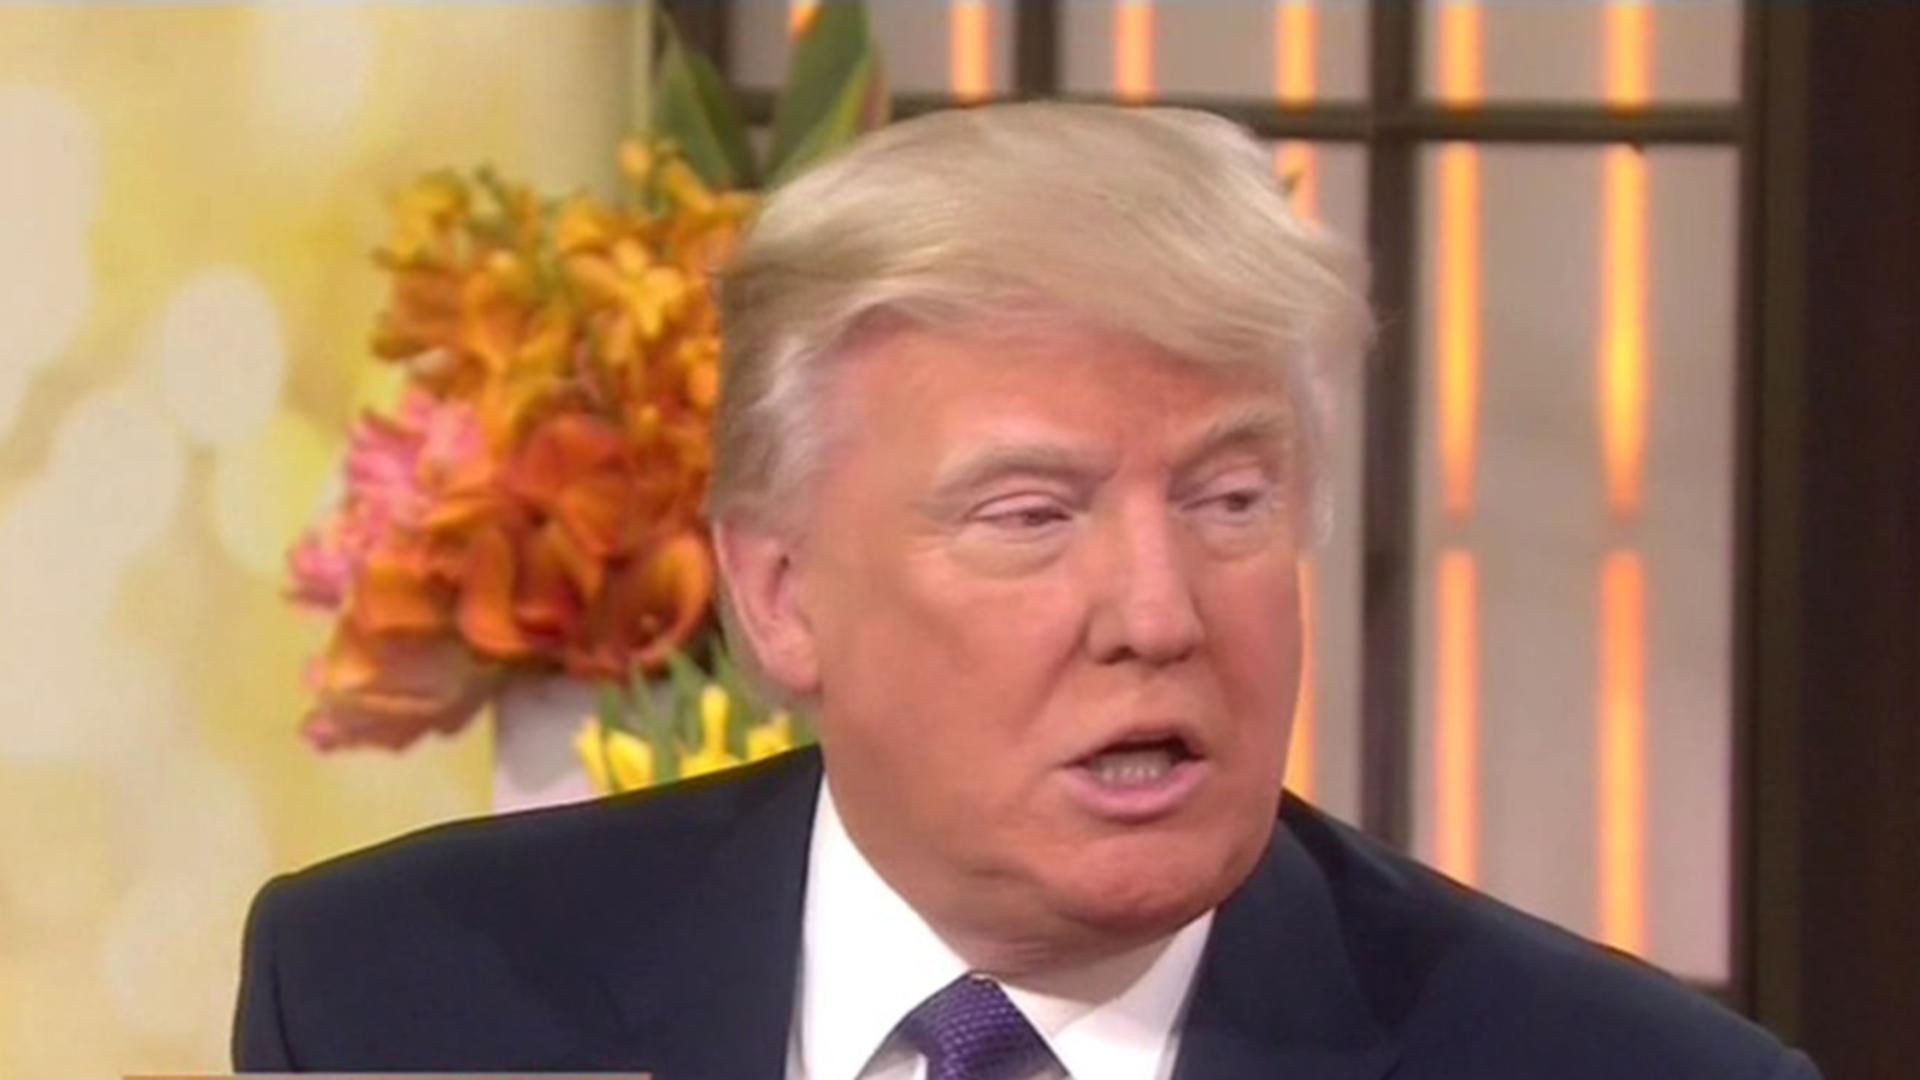 De ce are Donald Trump fața portocalie? Explicația halucinantă dată chiar de fostul președinte